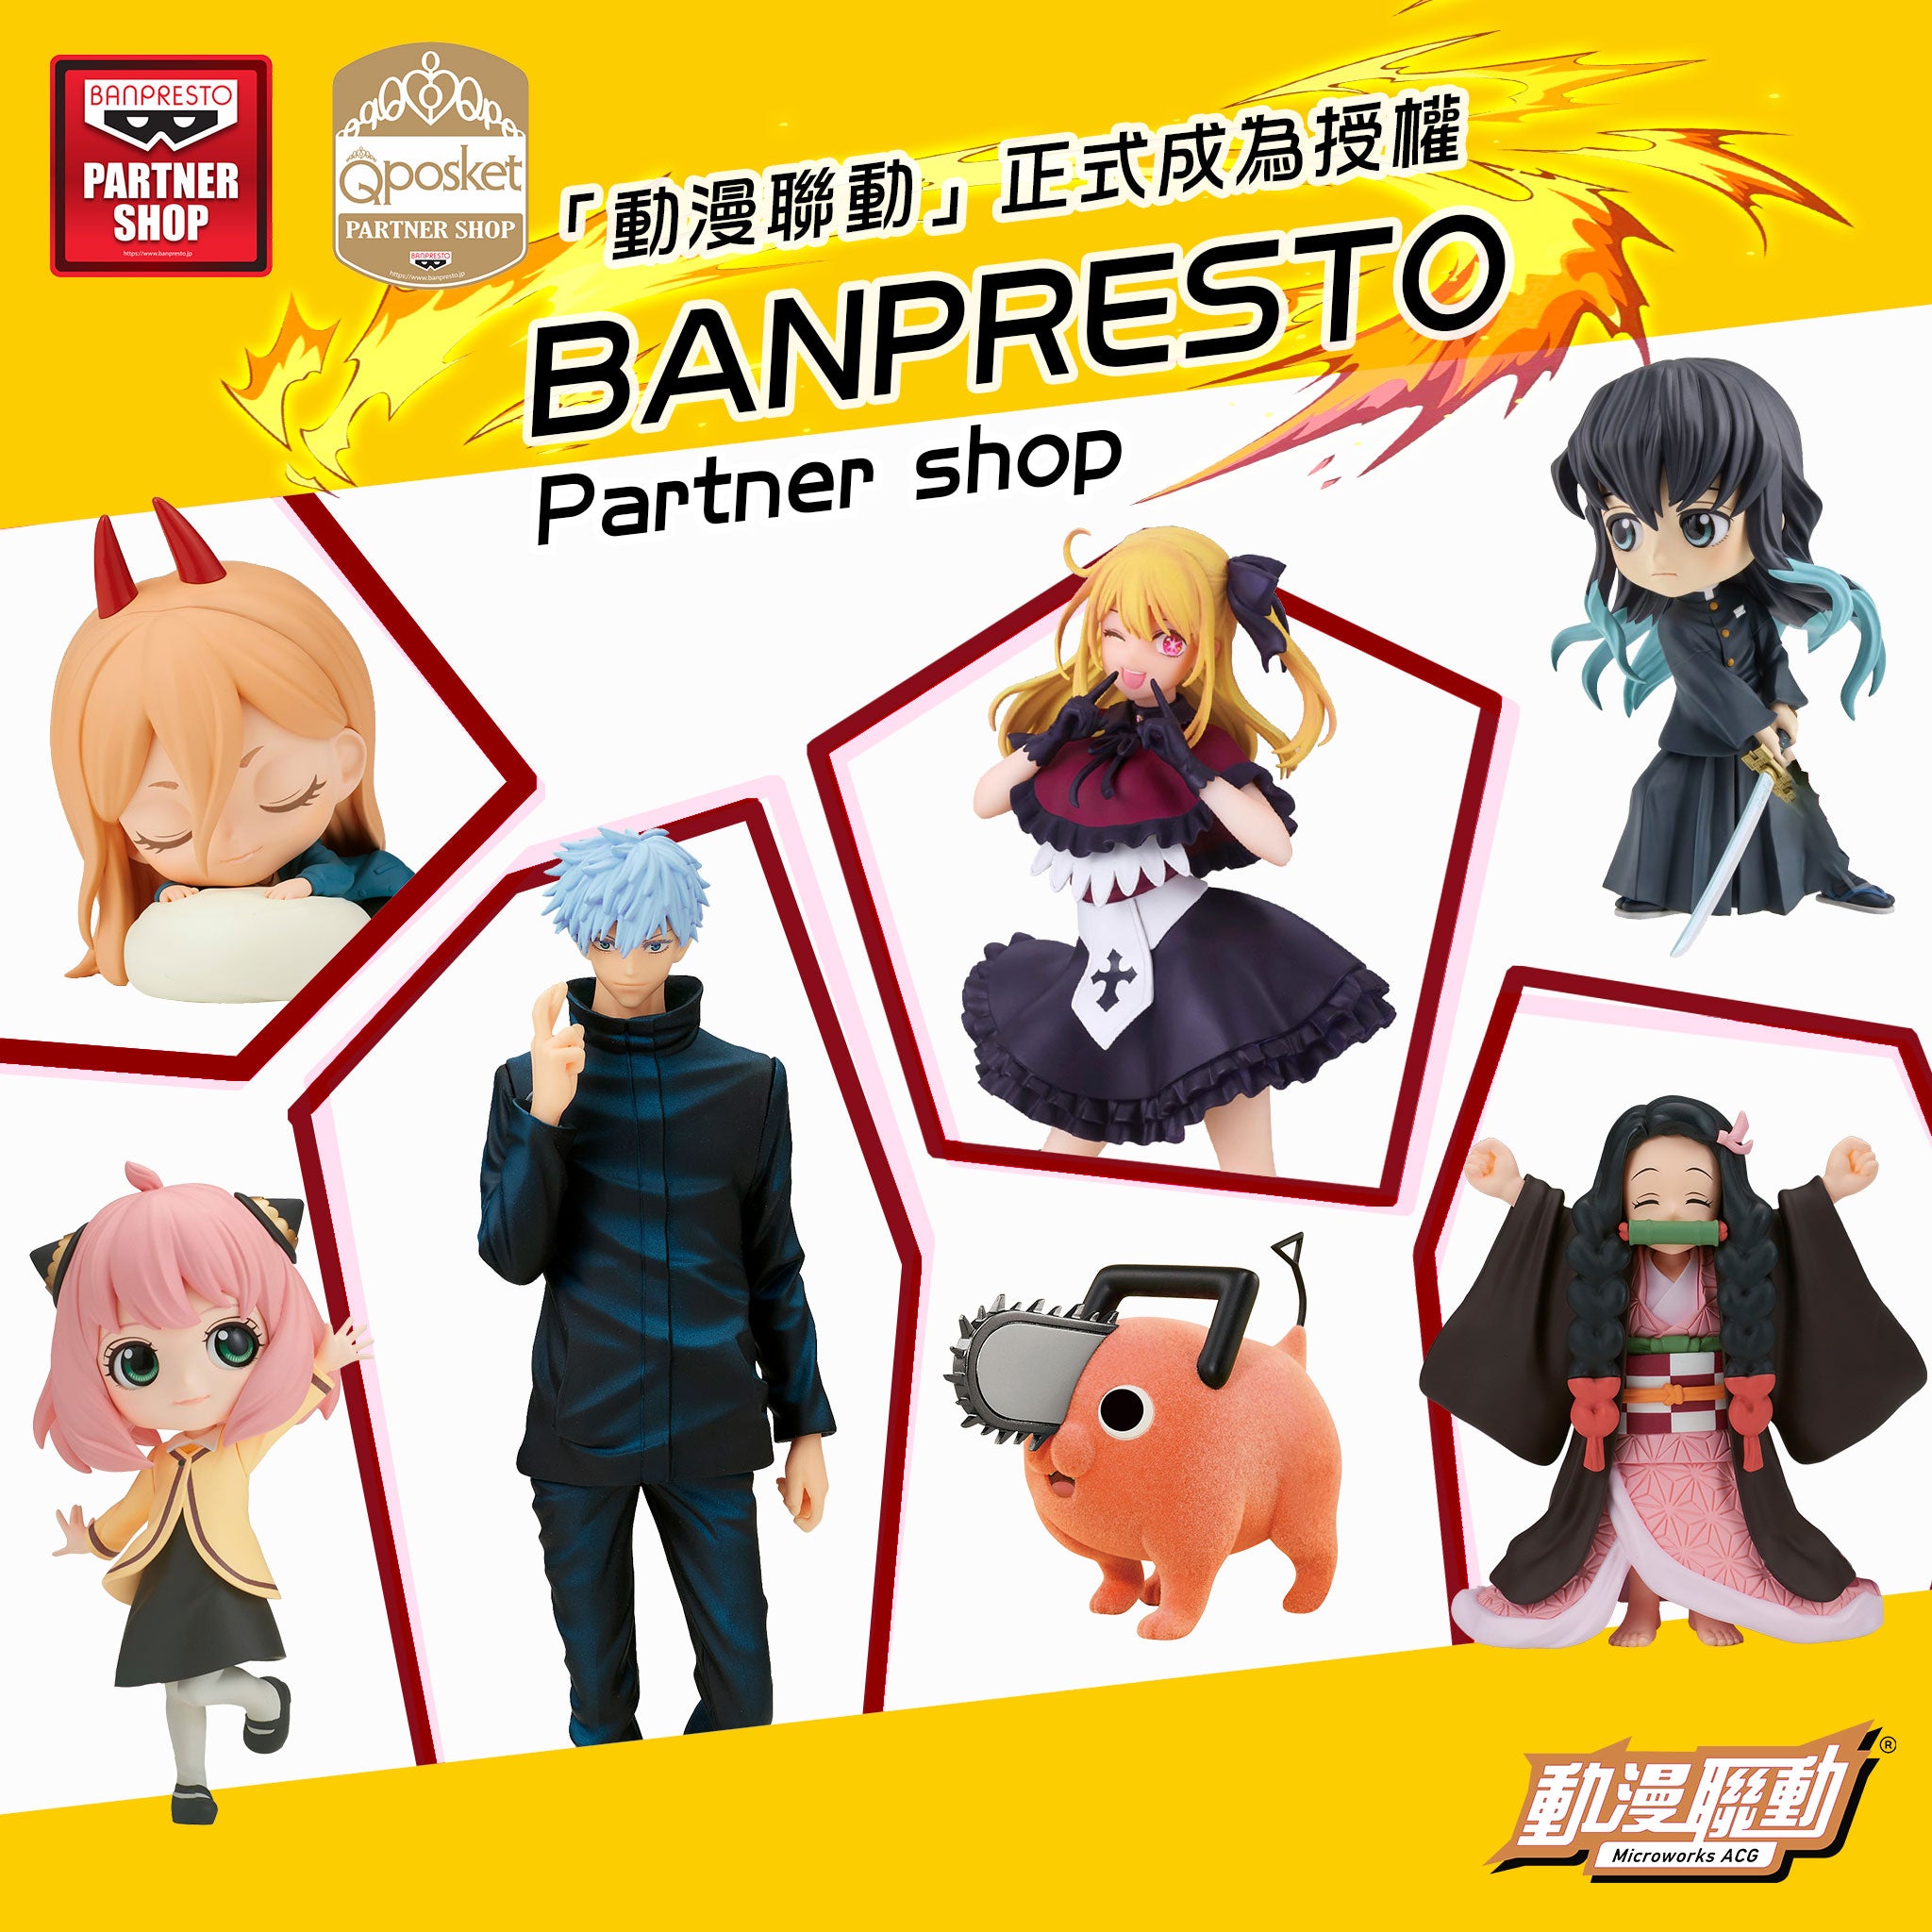 「動漫聯動」正式成為授權 Banpresto Partner shop（授權商店）